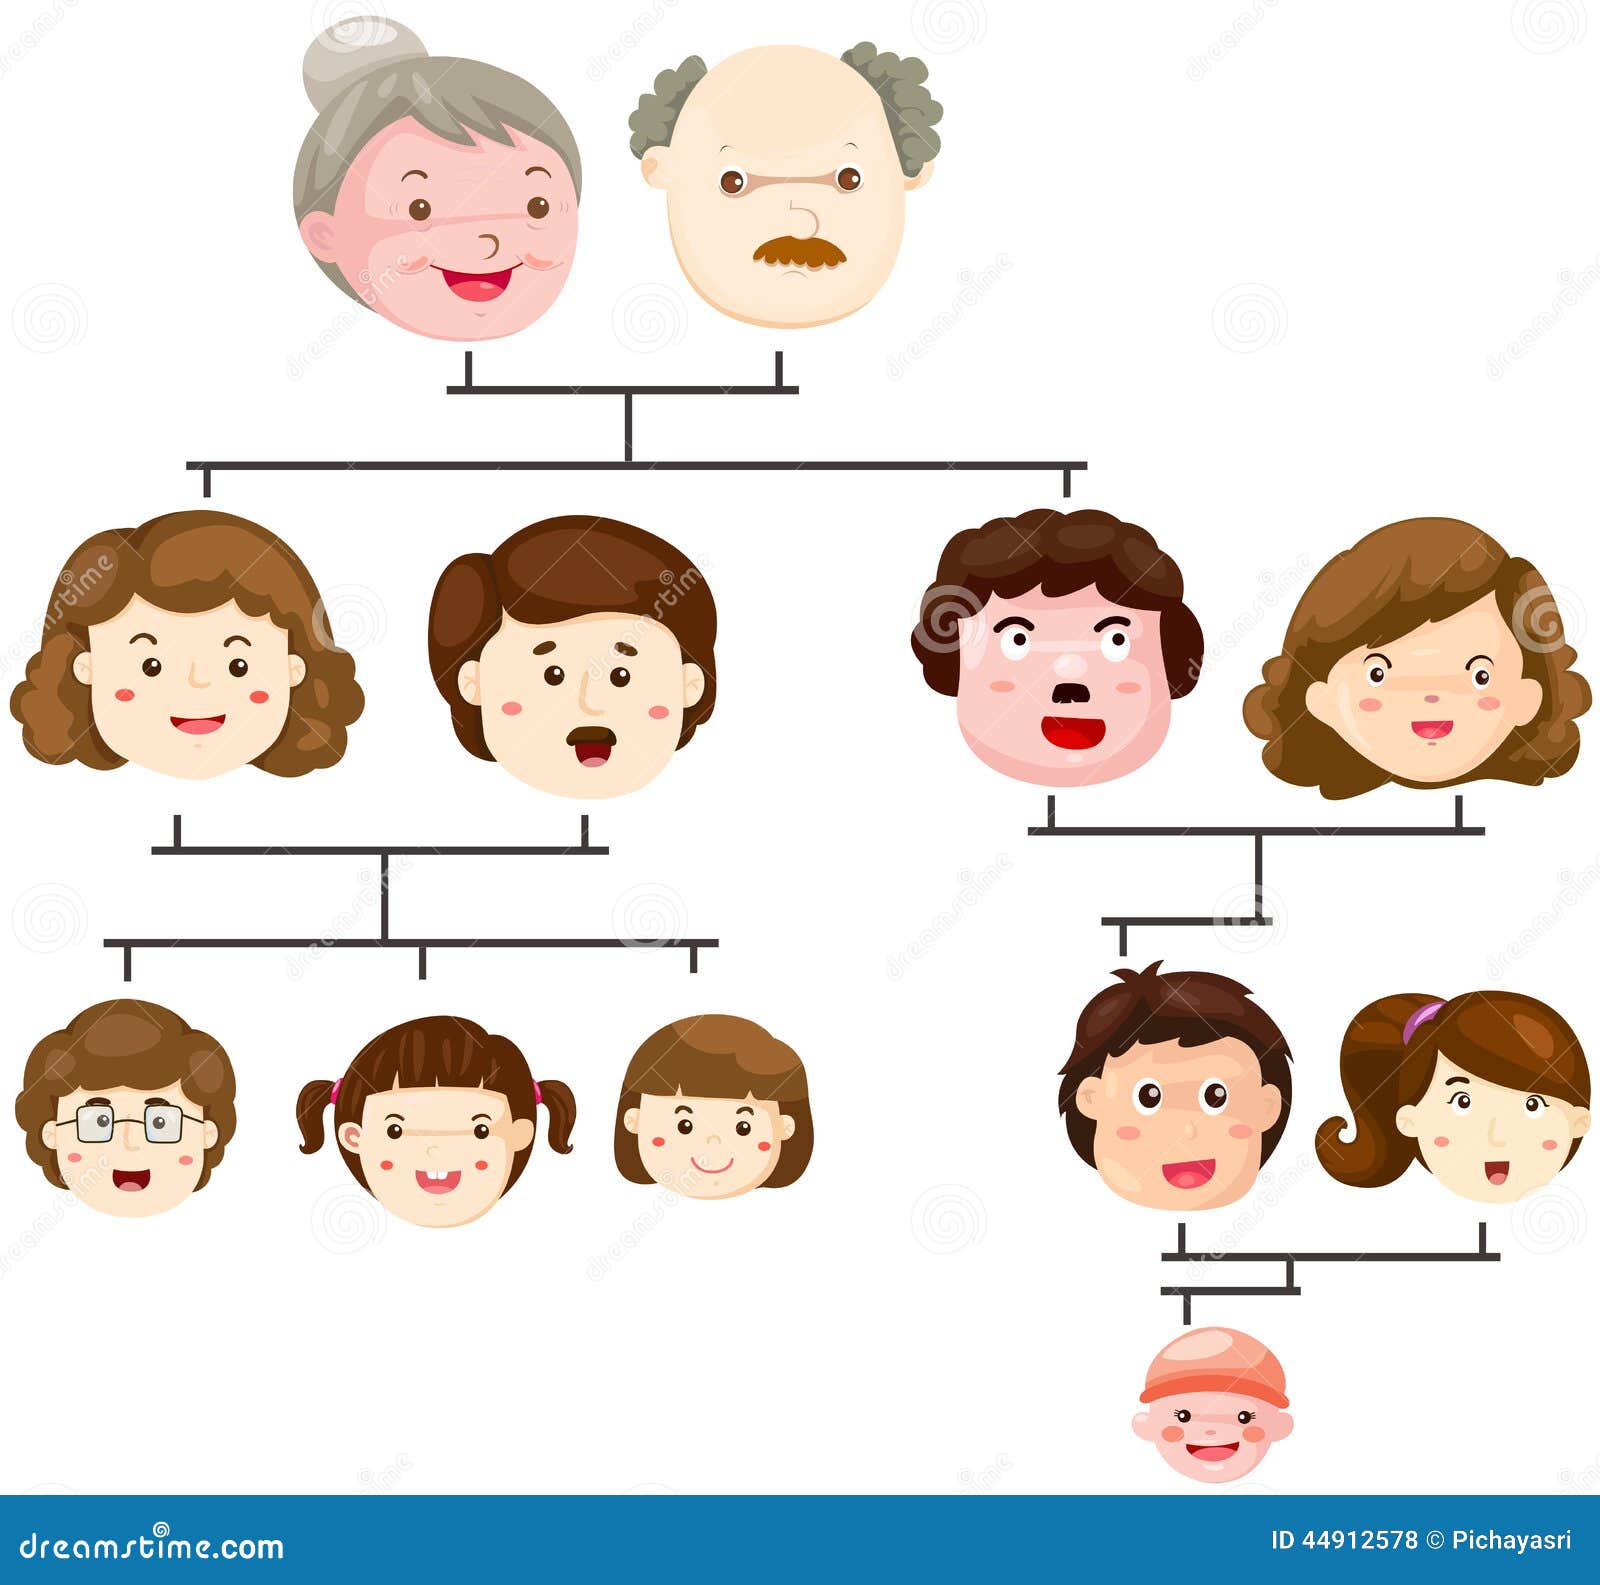 big family tree cartoon